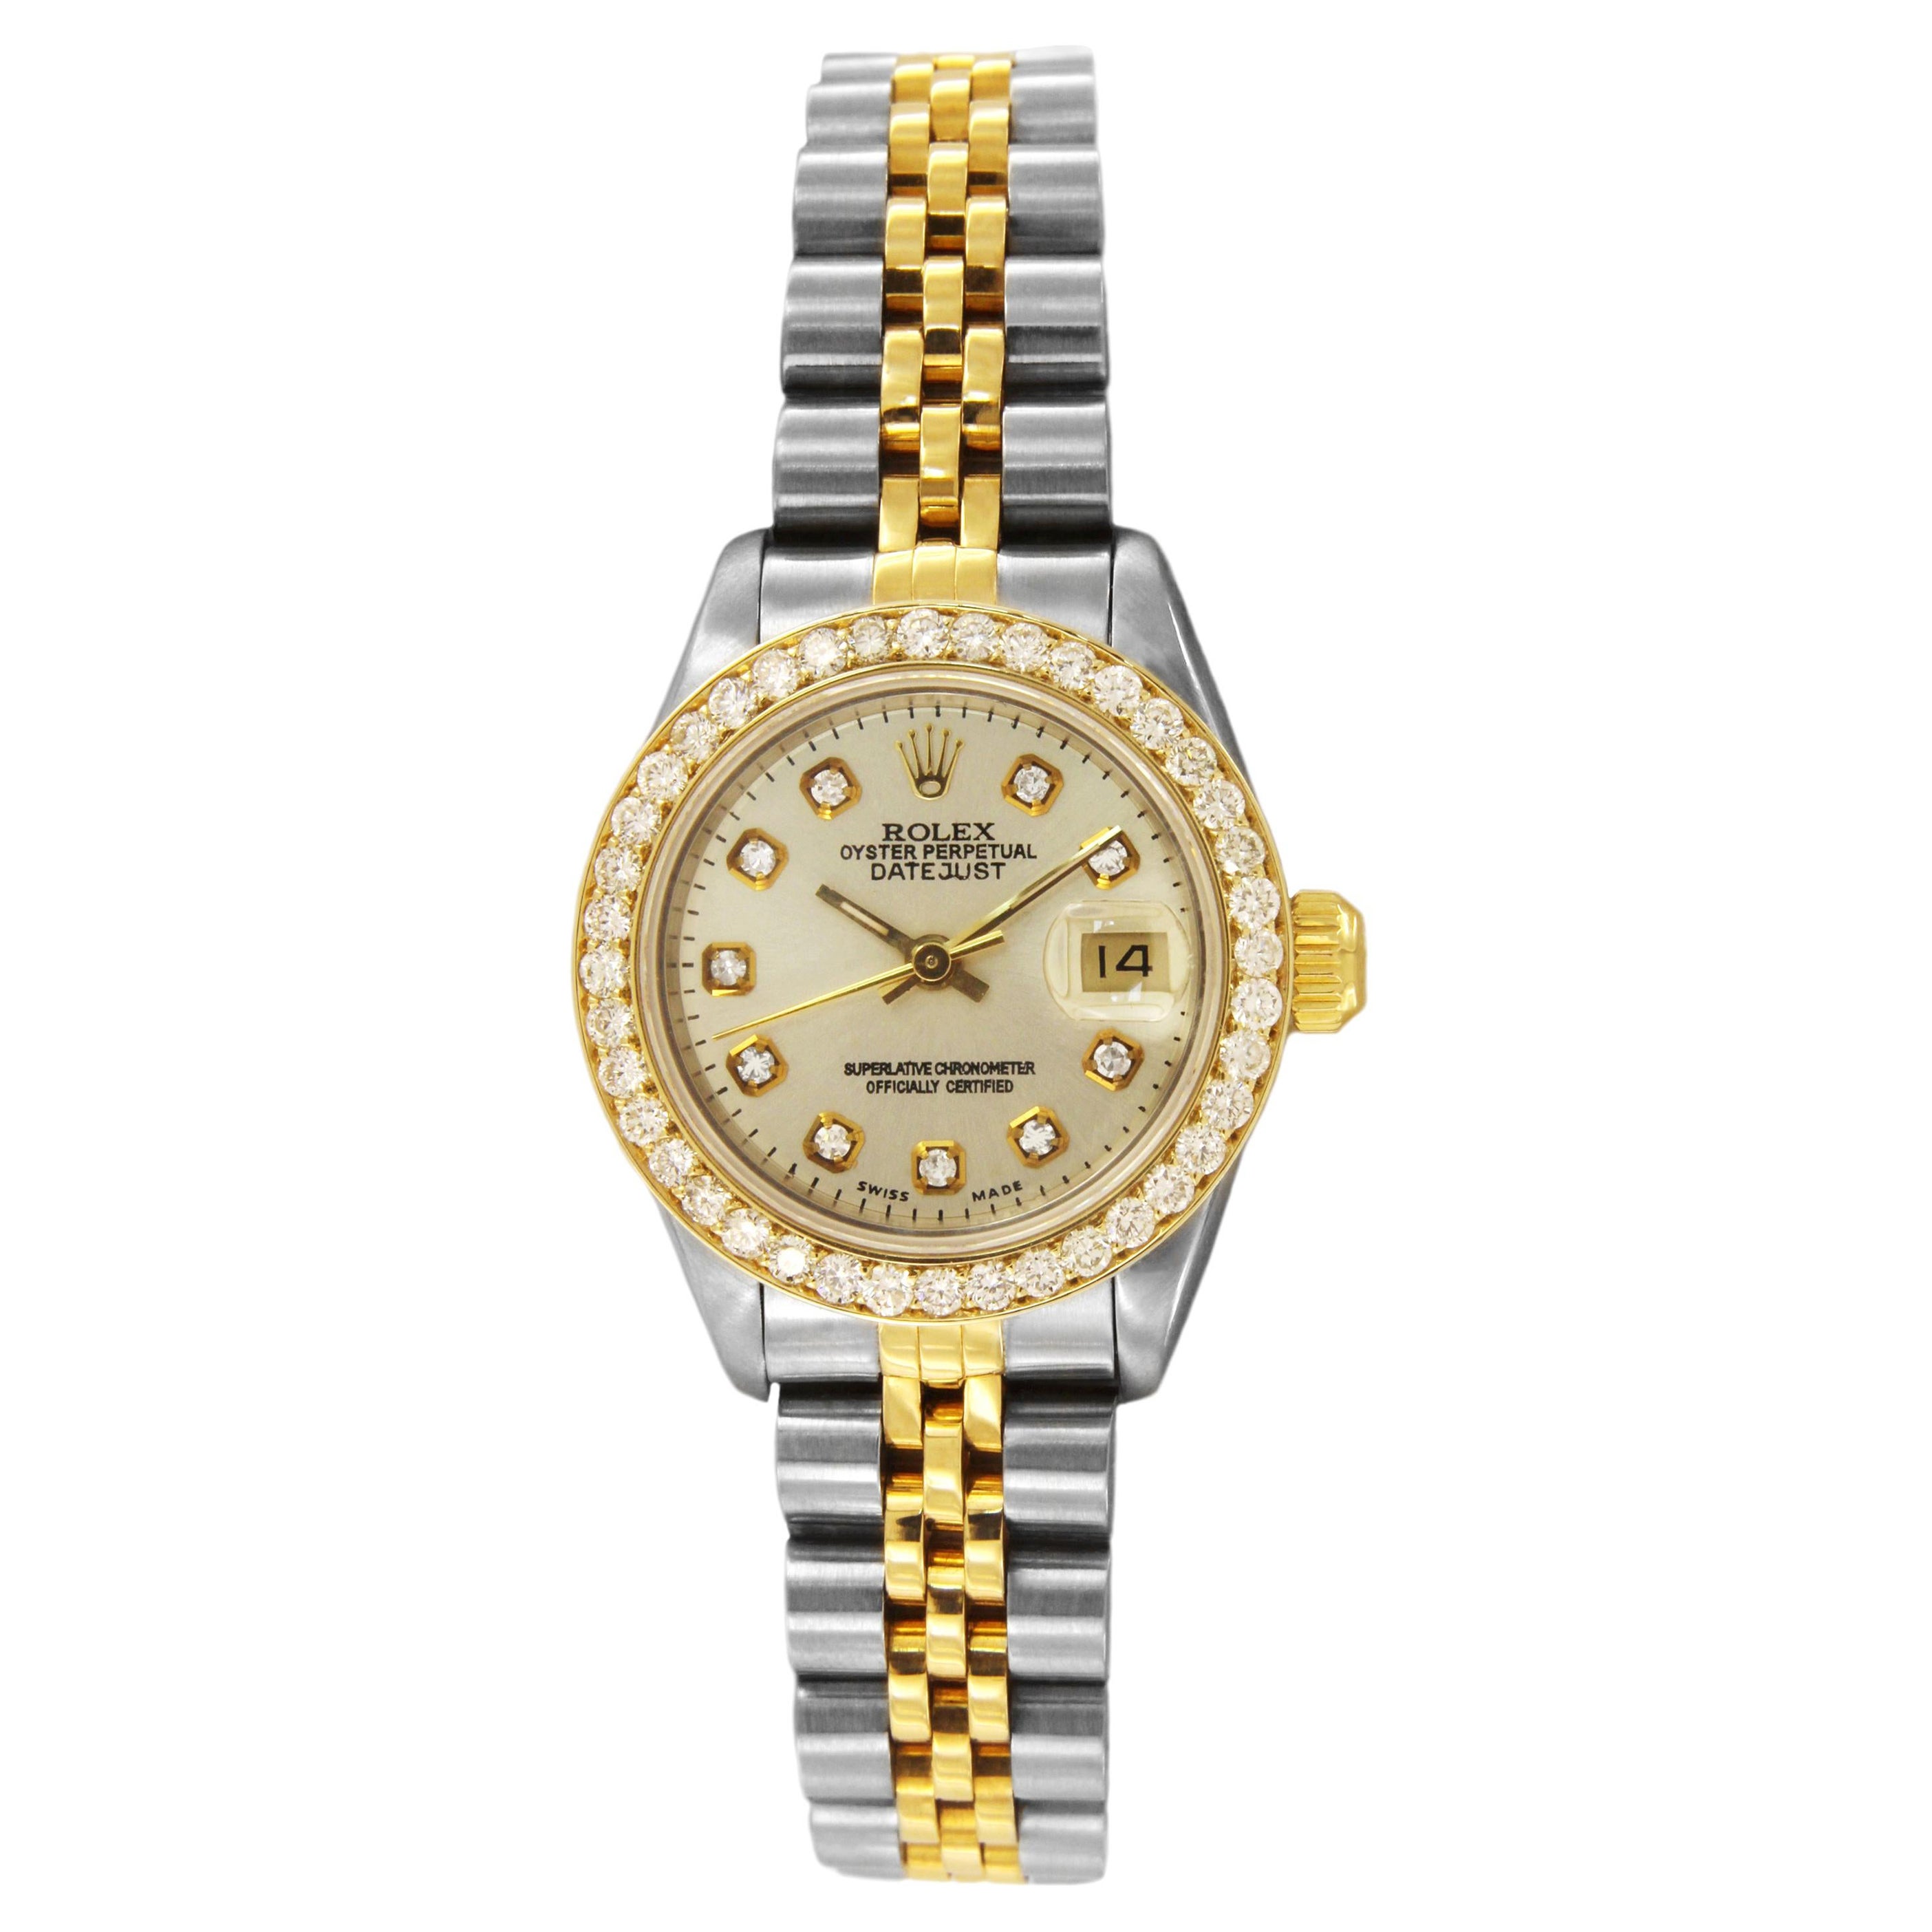 Lady Datejust zweifarbige Uhr 69173 von Rolex